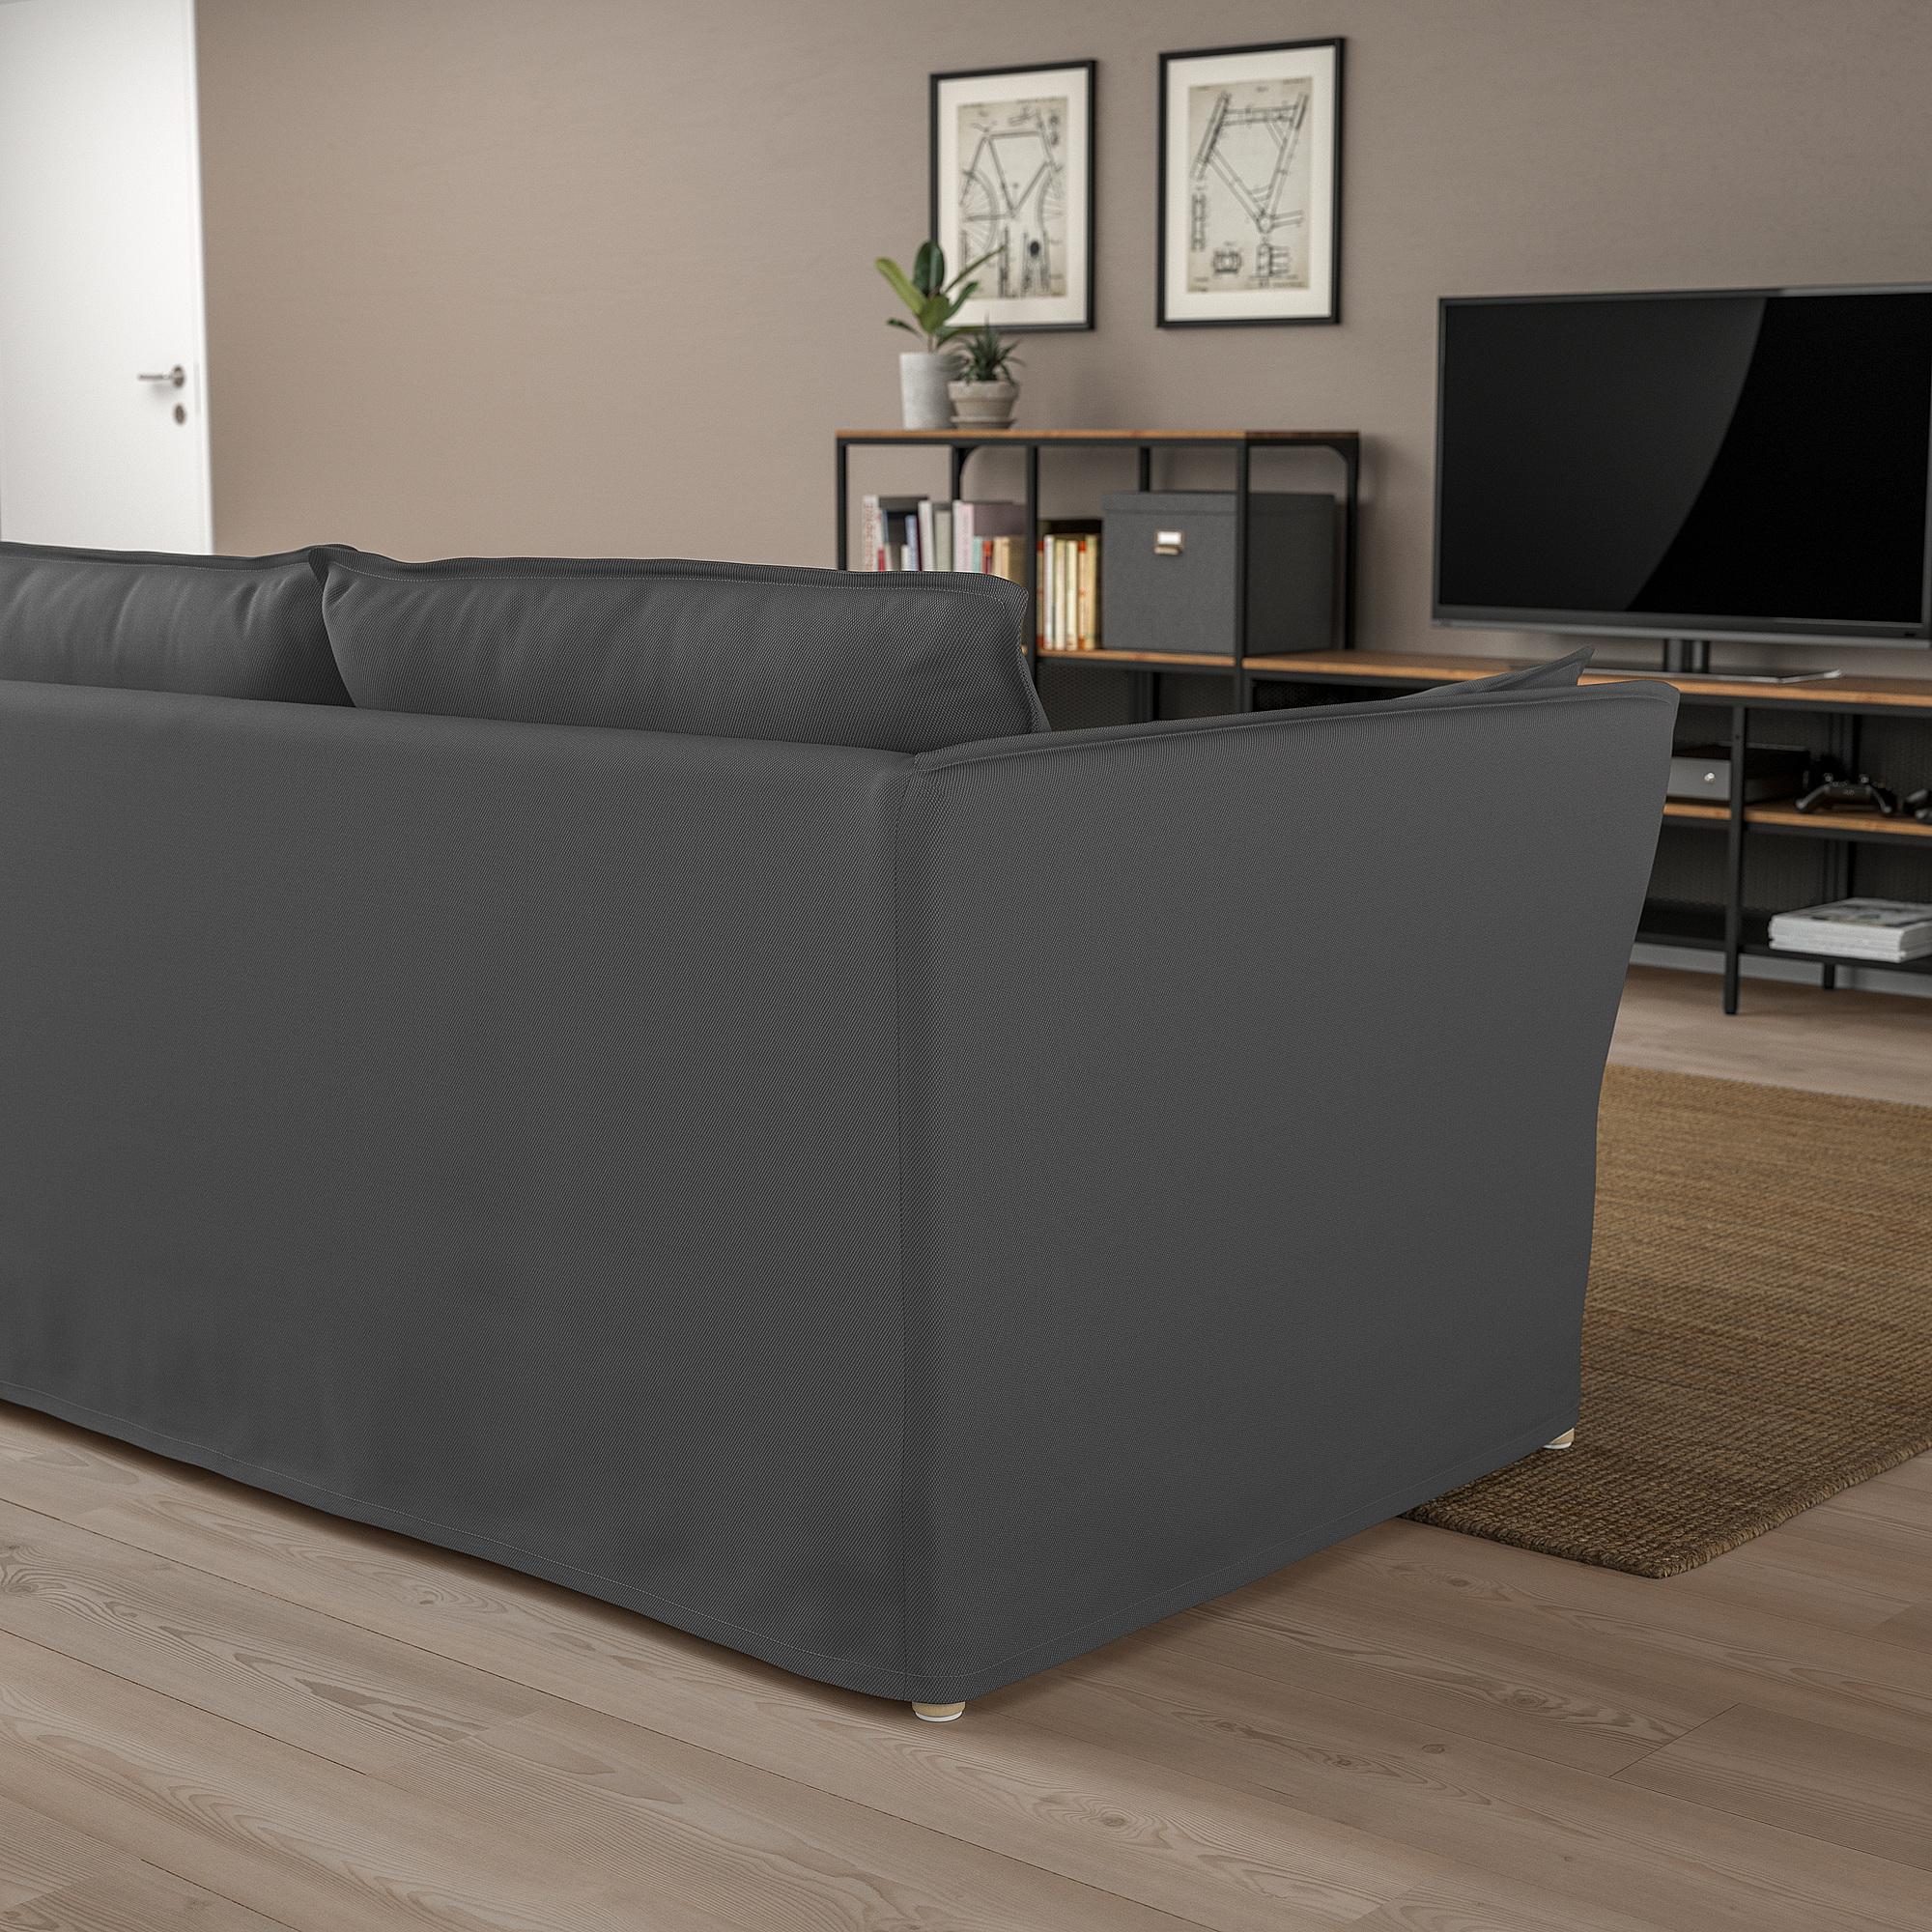 BACKSÄLEN 2-seat sofa